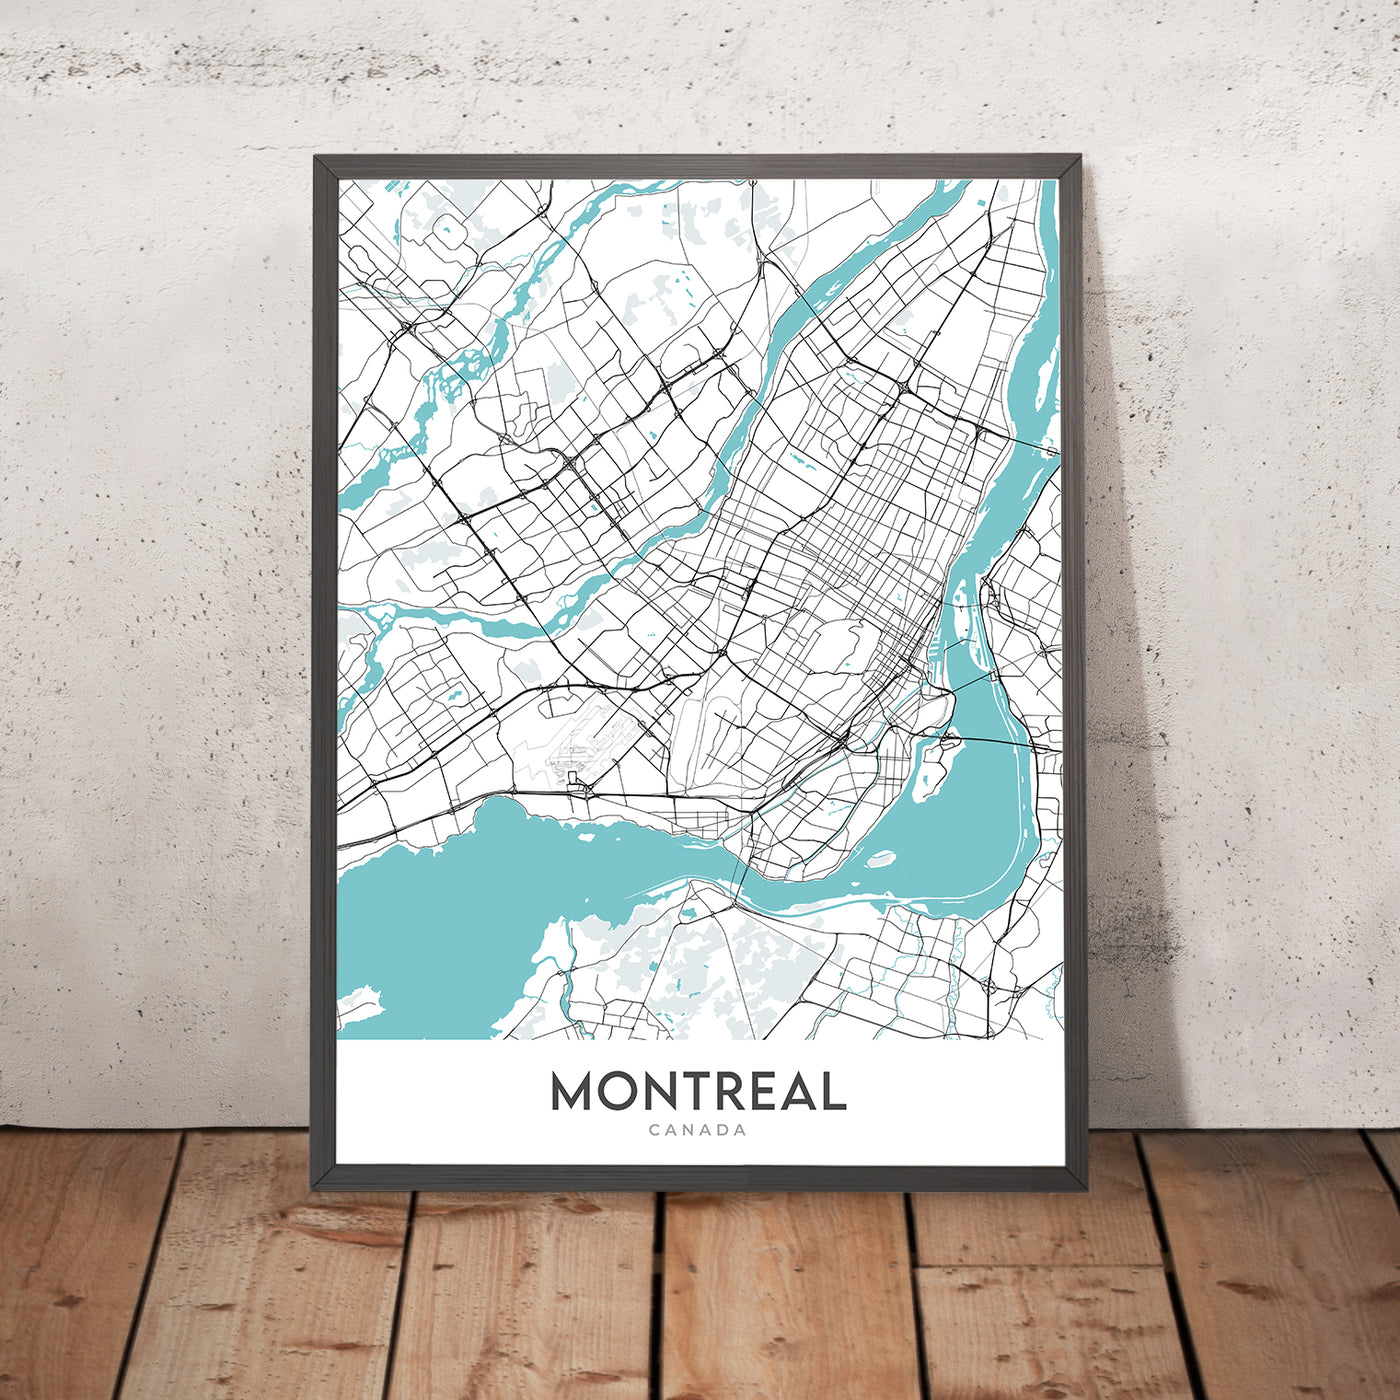 Plan de la ville moderne de Montréal, Canada : Mont Royal, McGill, Stade olympique